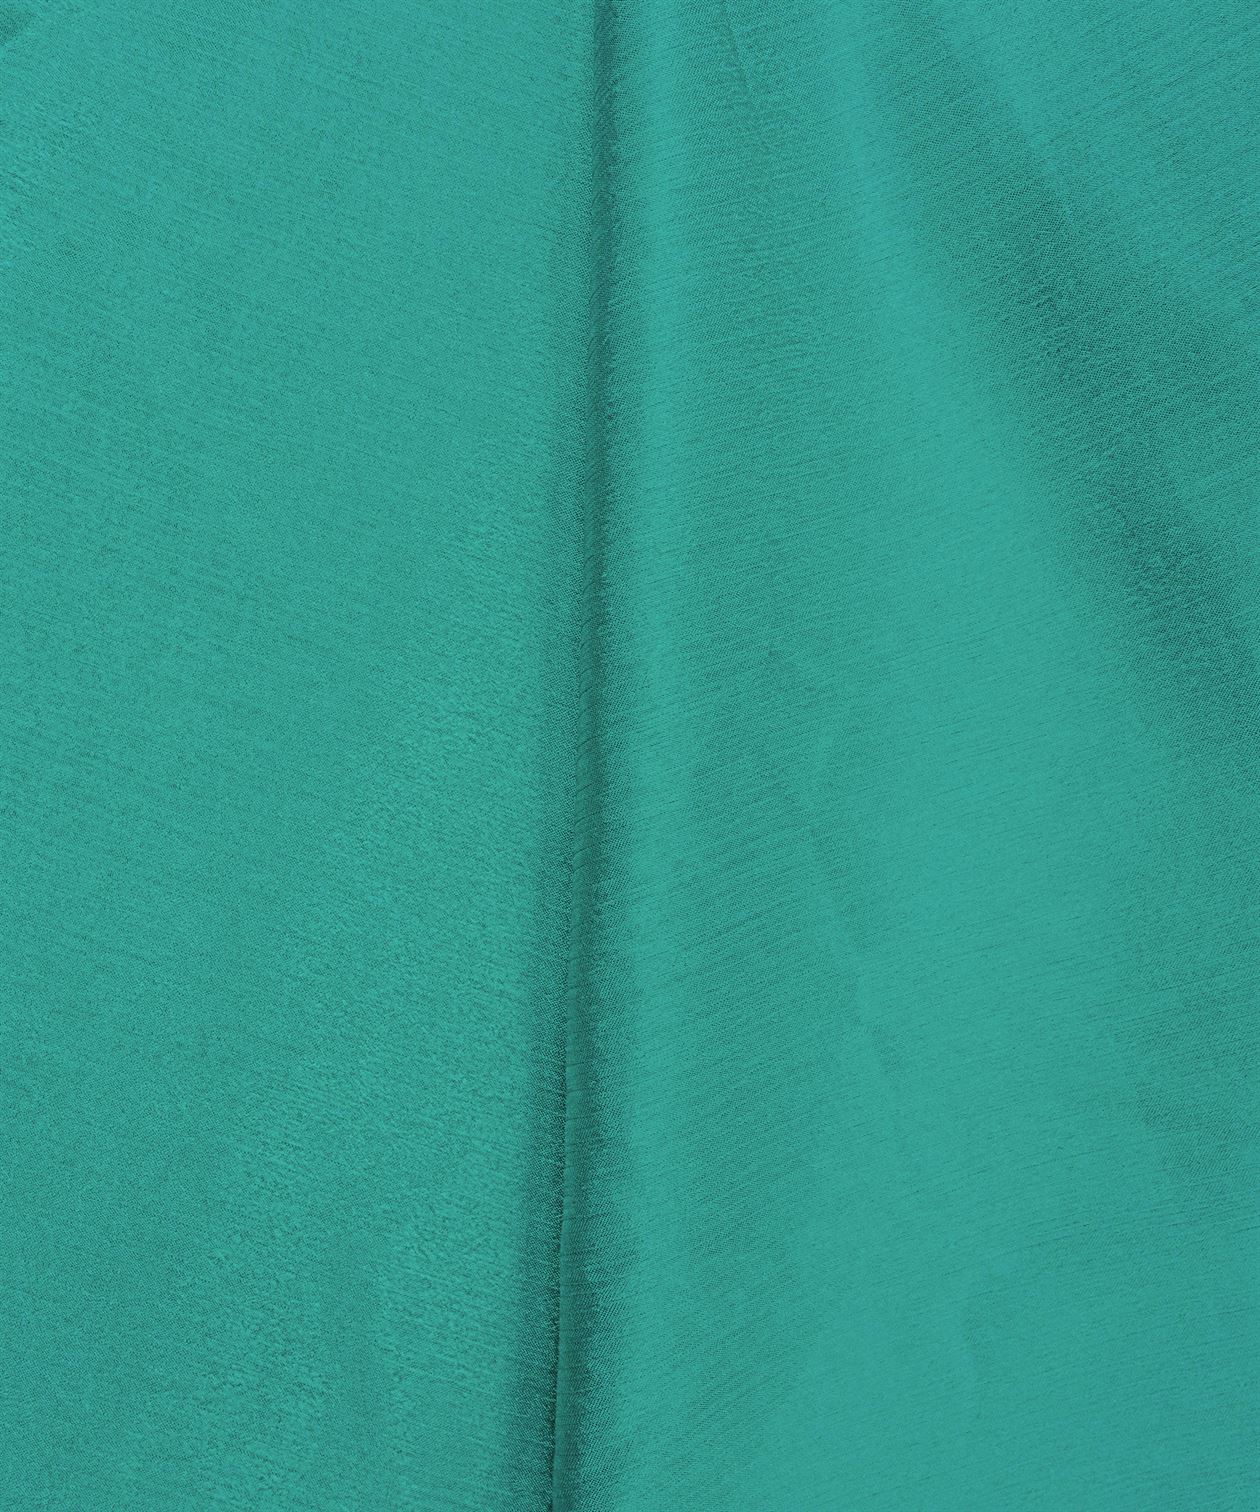 Sea Green Plain Dyed Bright Chiffon Fabric